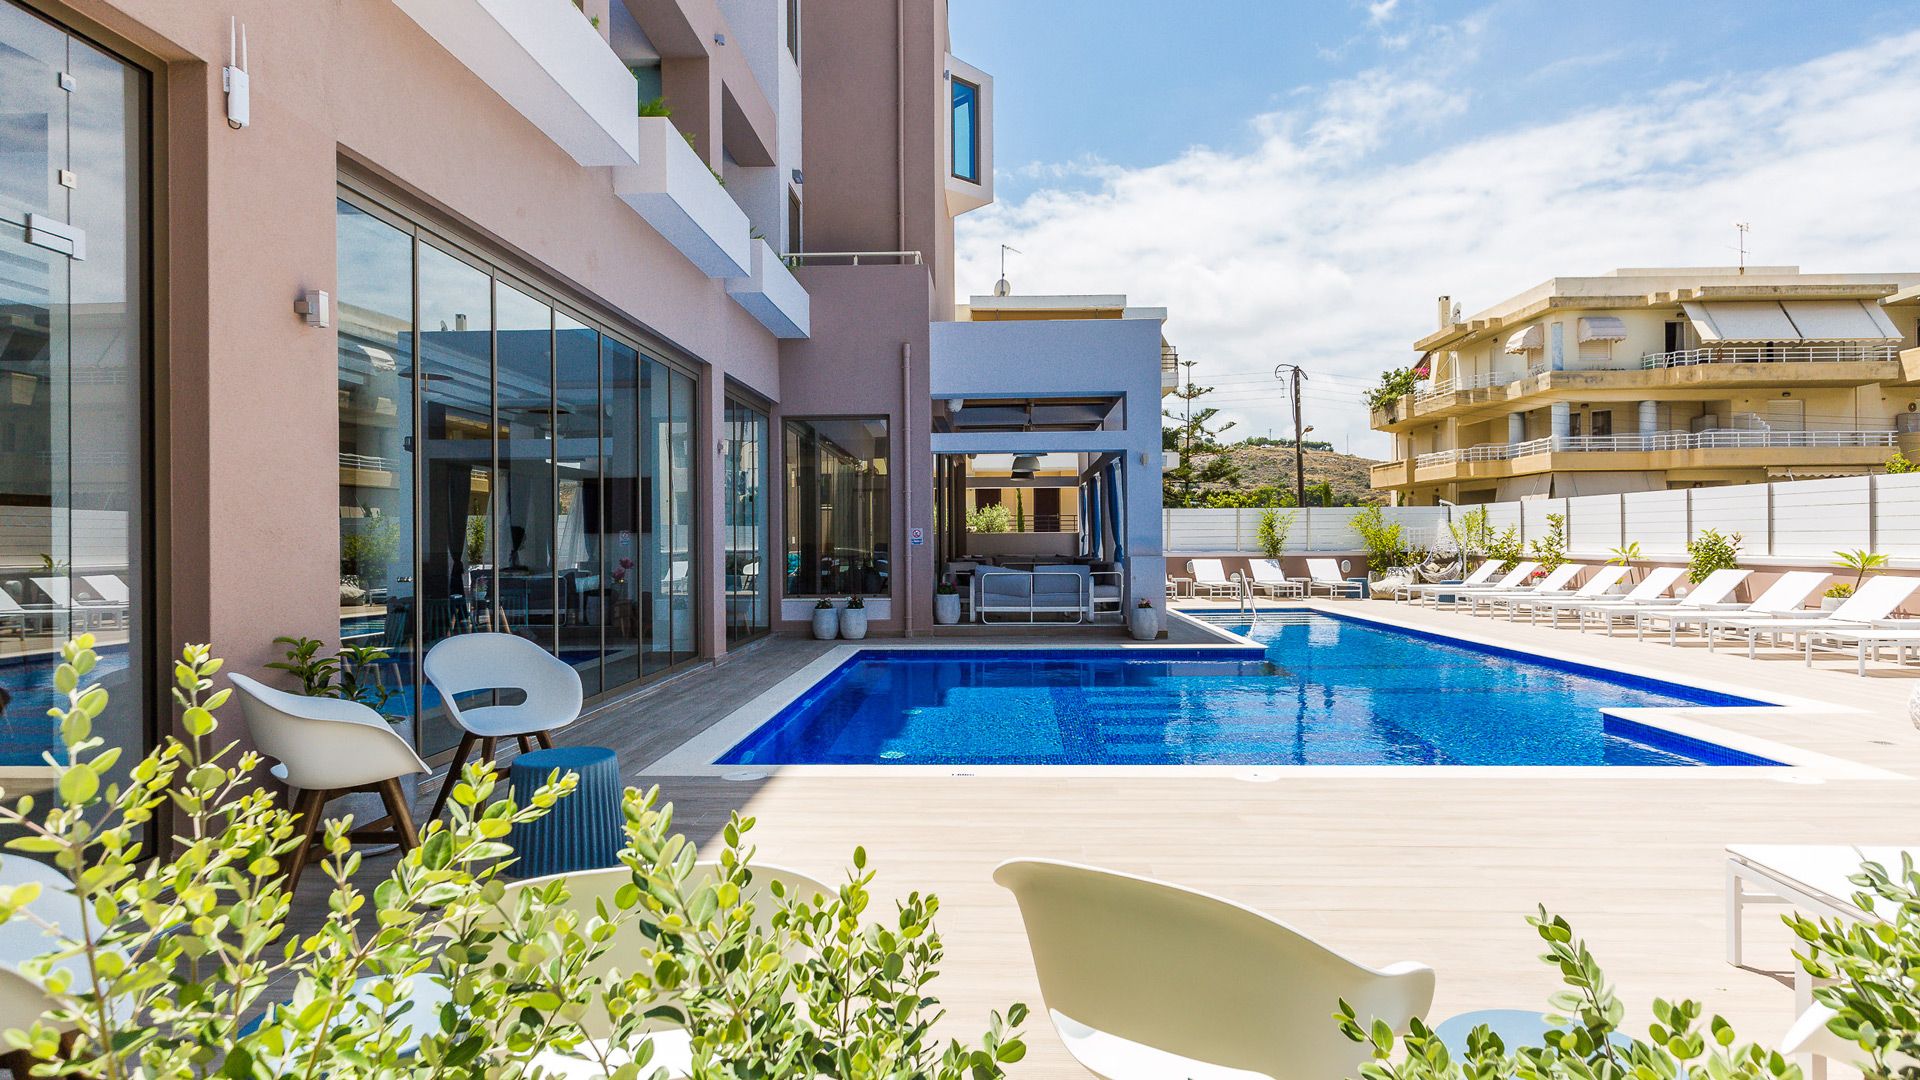 Menta City Boutique Hotel - Ρέθυμνο, Κρήτη ✦ 2 Ημέρες